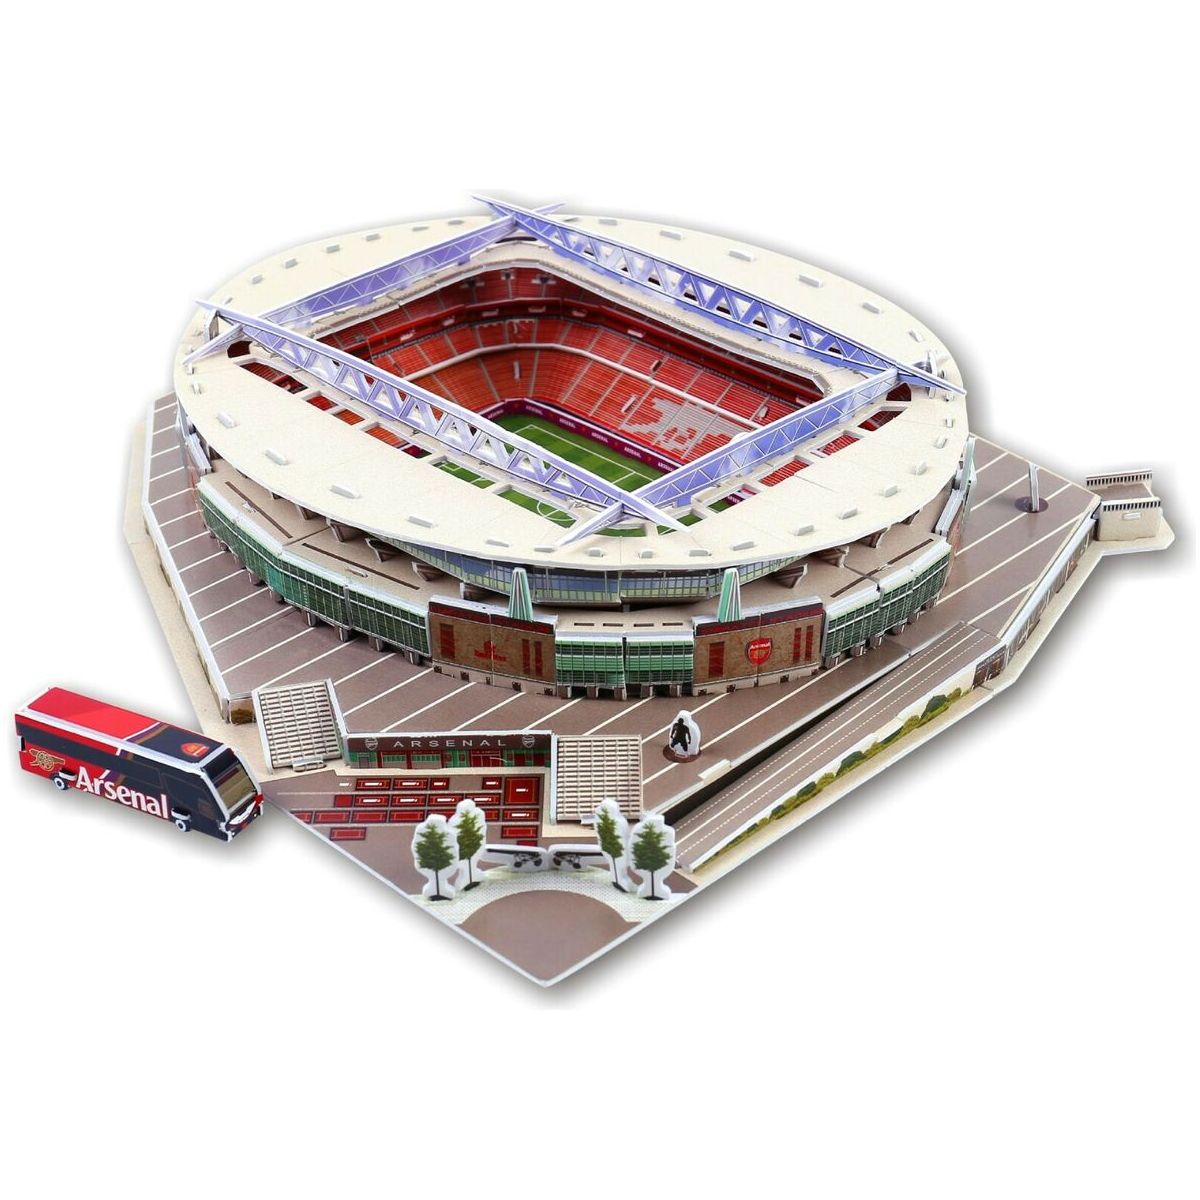 Emirates Stadium 3D Puzzle For Kids, 105 Pieces - Multi Color